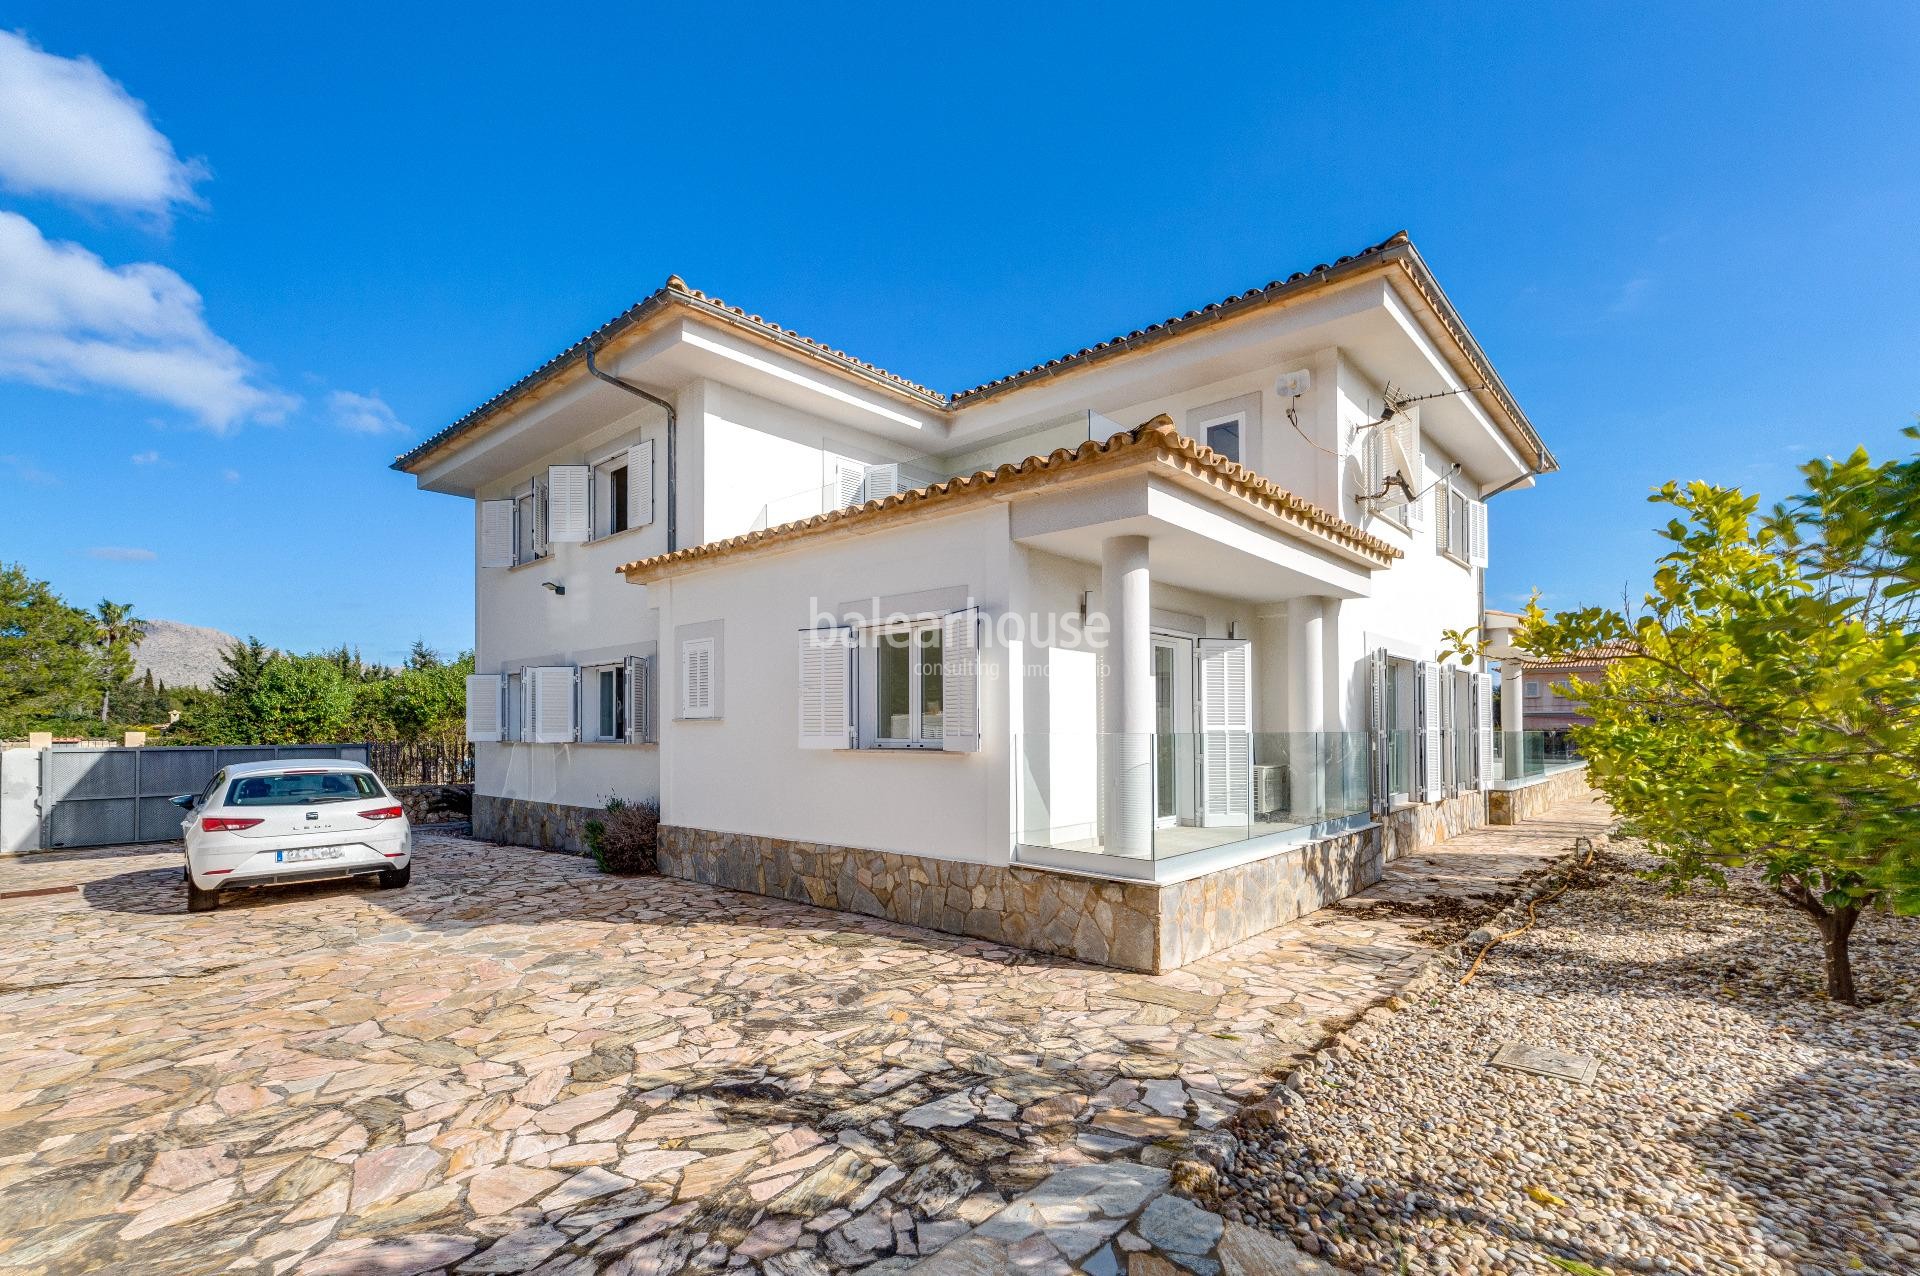 Villa de estilo mediterraneo a pocos minutos del mar en Puerto Pollensa